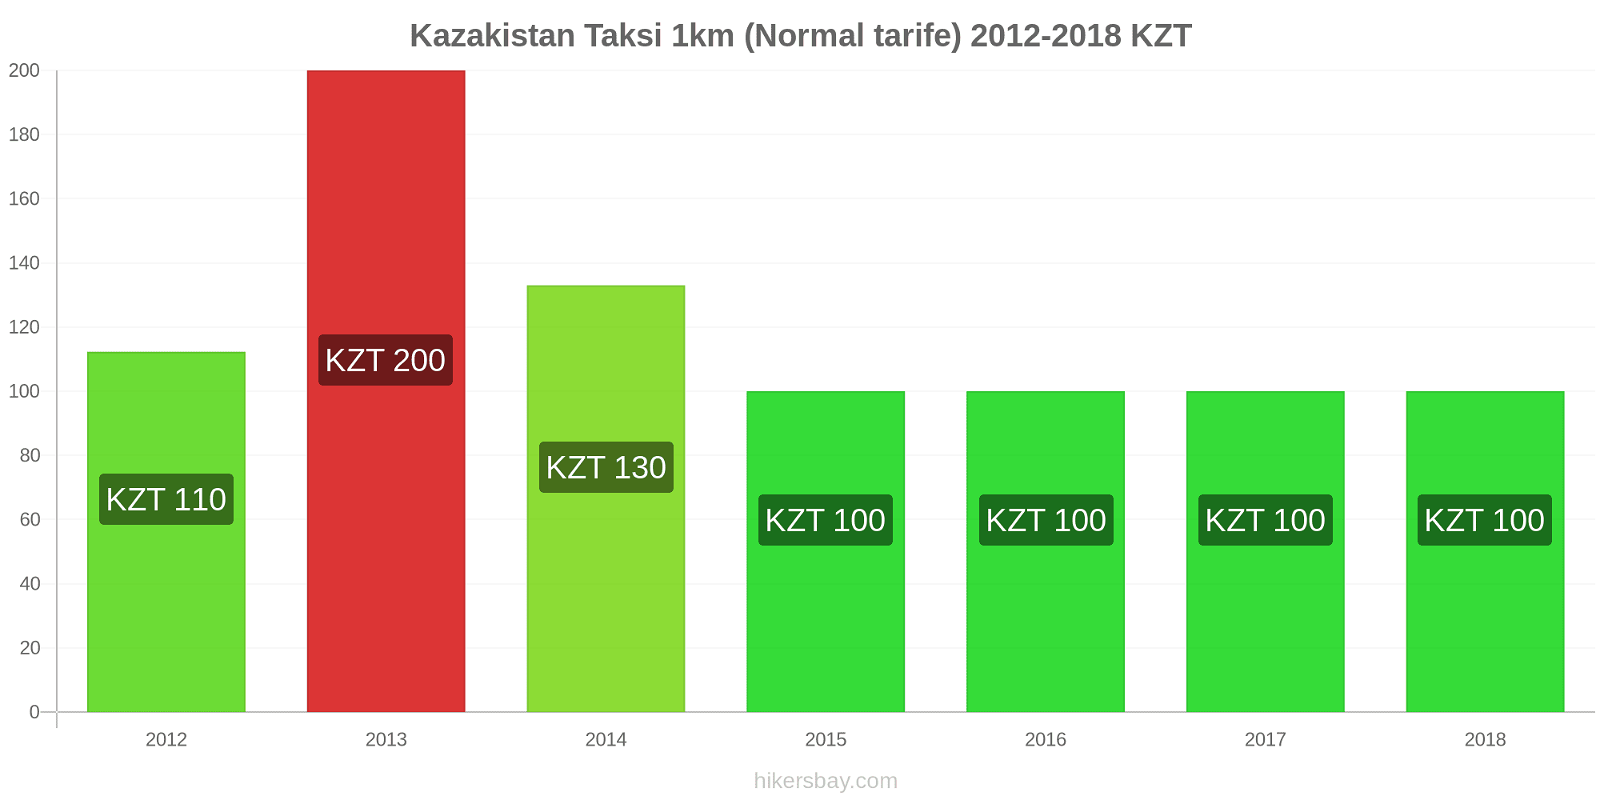 Kazakistan fiyat değişiklikleri Taksi 1km (Normal tarife) hikersbay.com